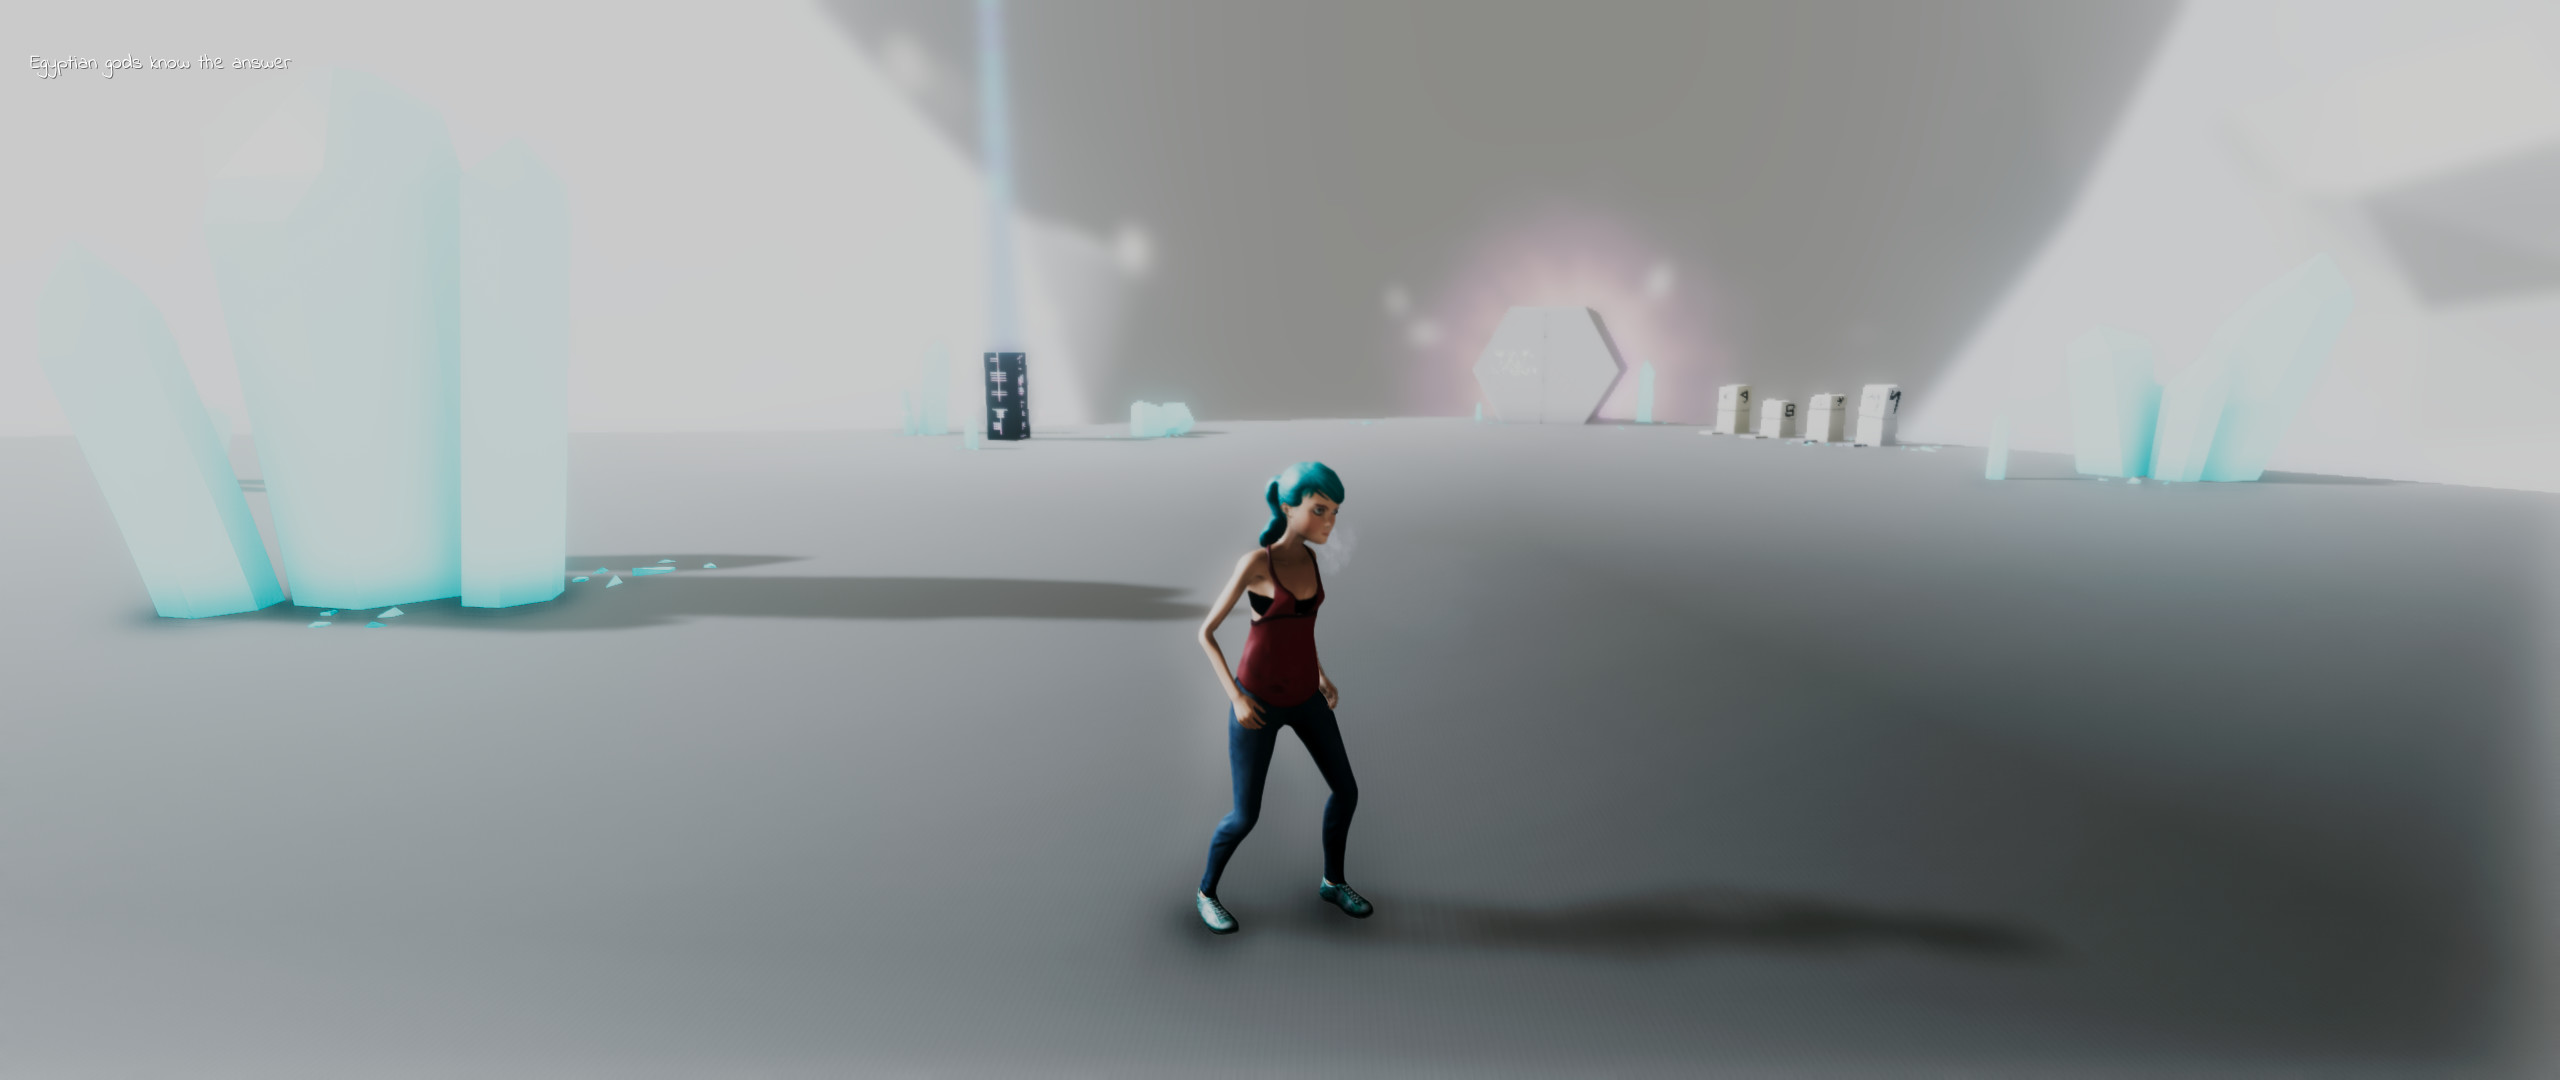 Solitude - Escape of Head screenshot